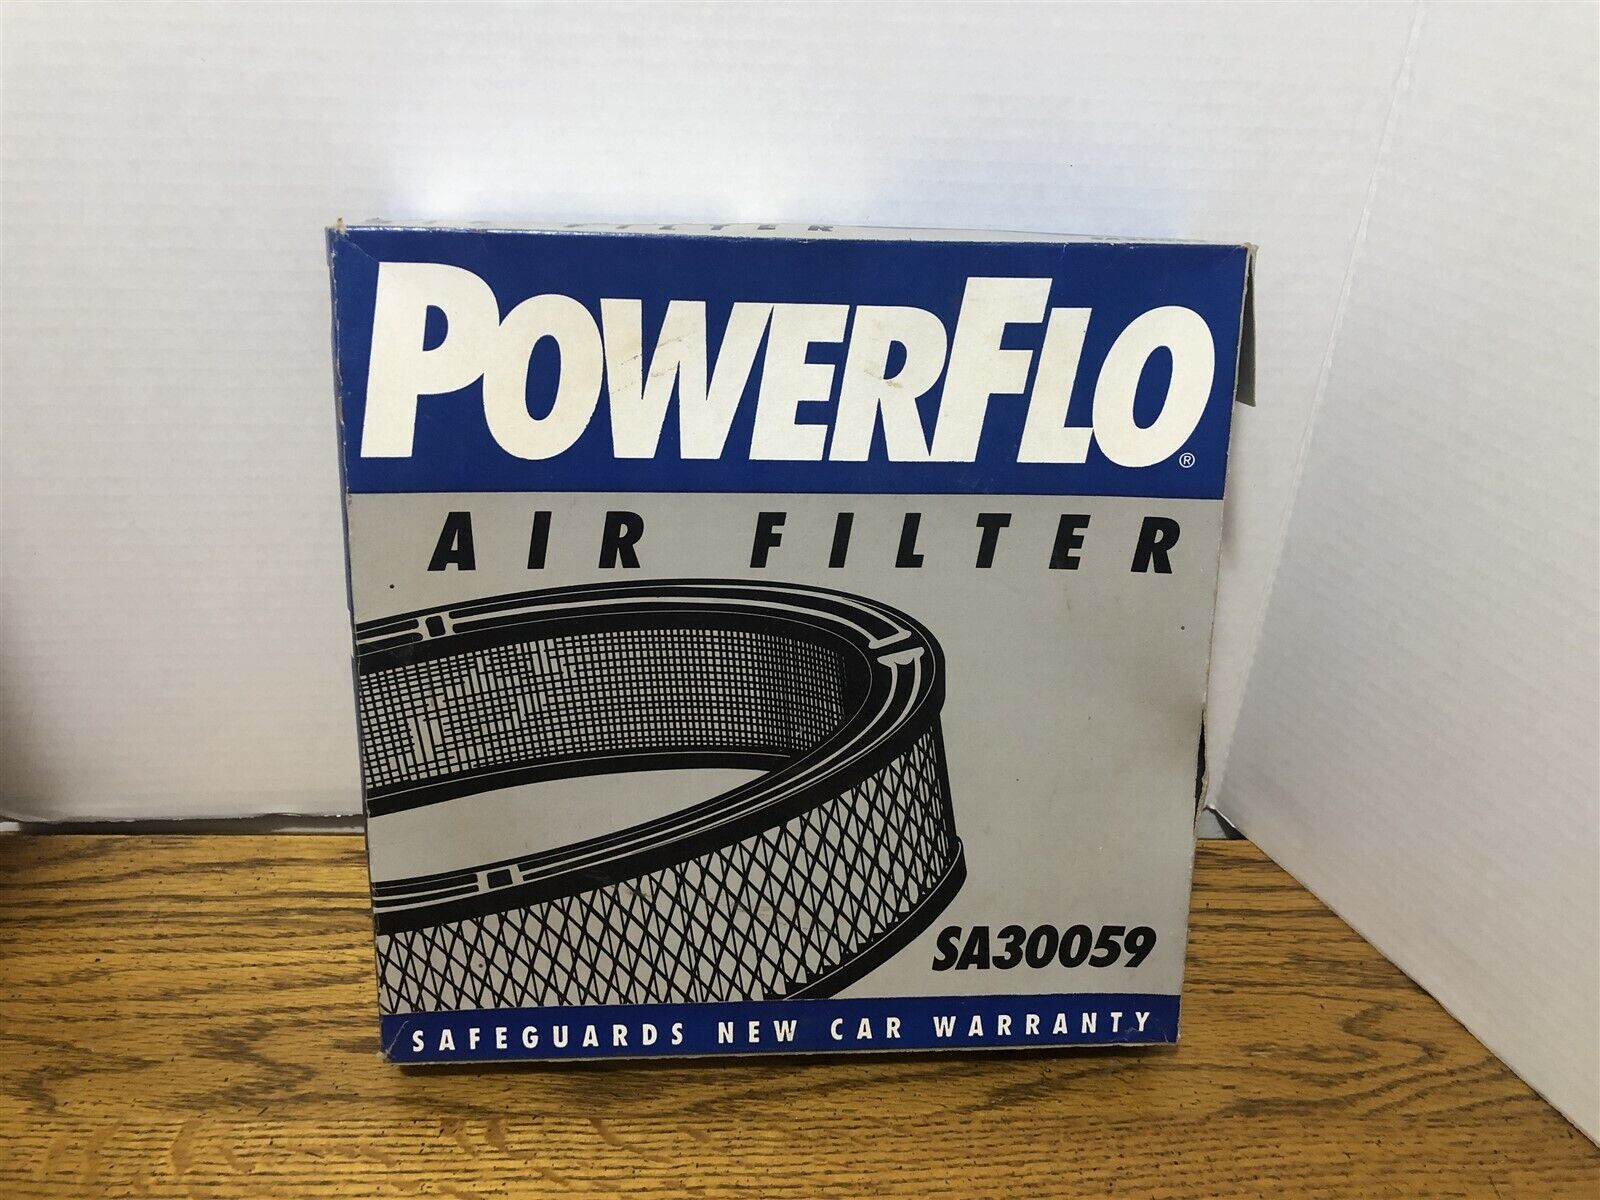 PowerFlo Original Equipment # SA30059 Sub. AC169CW New in Box, Air FilterAutom